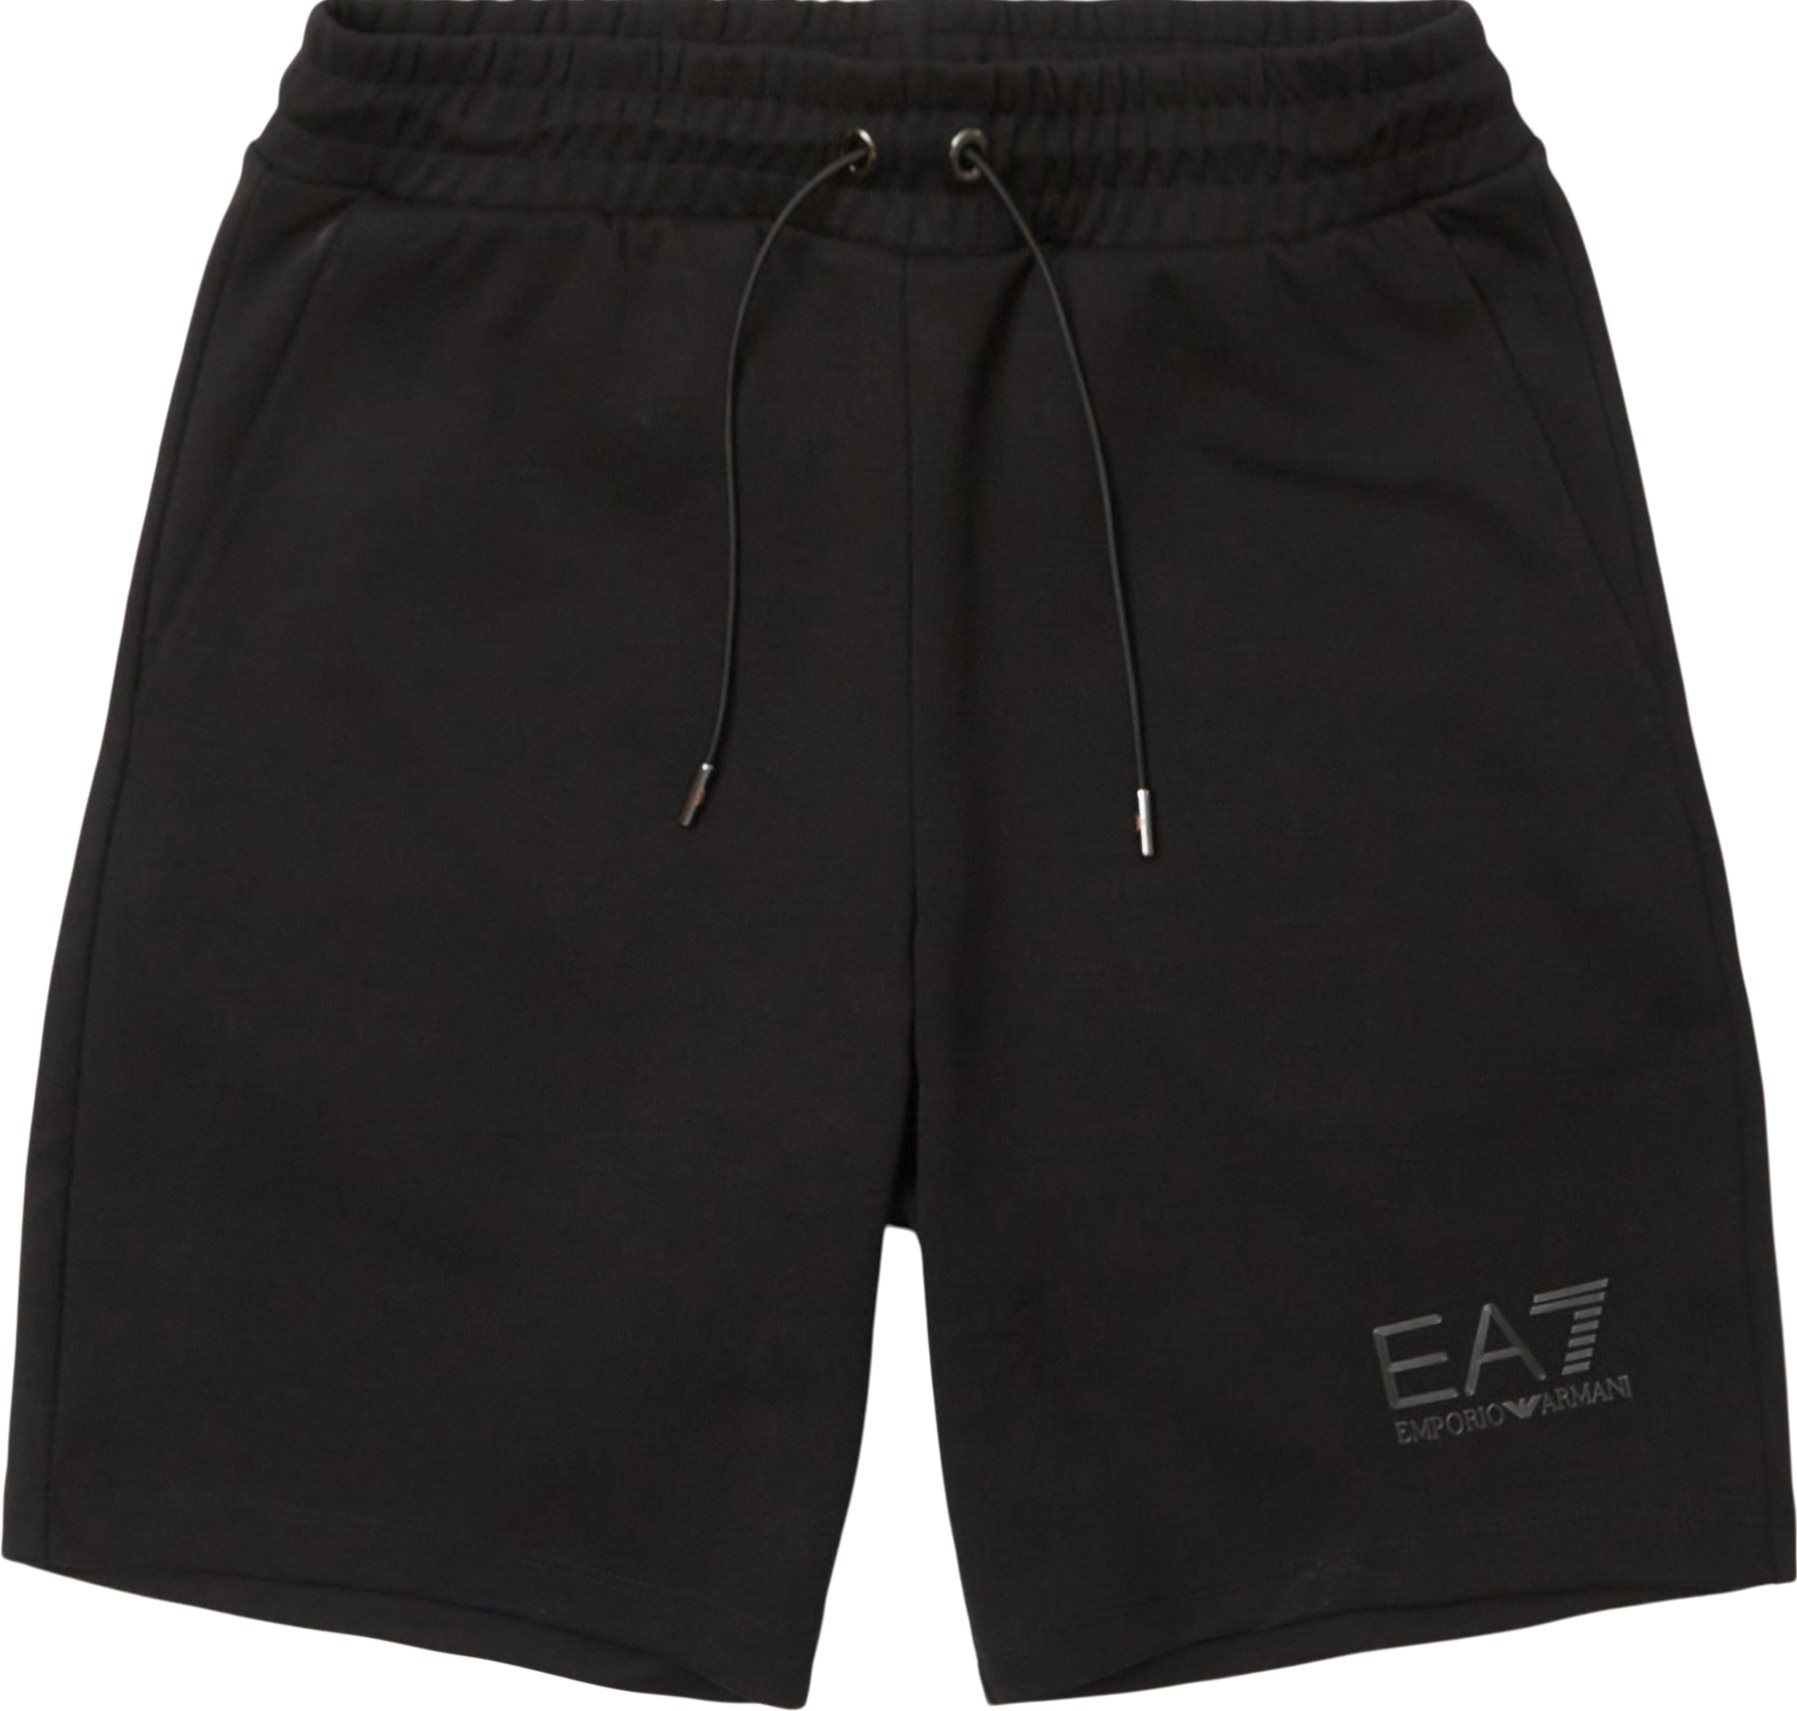 PJARZ-3LPS75 Shorts  - Shorts - Regular fit - Black